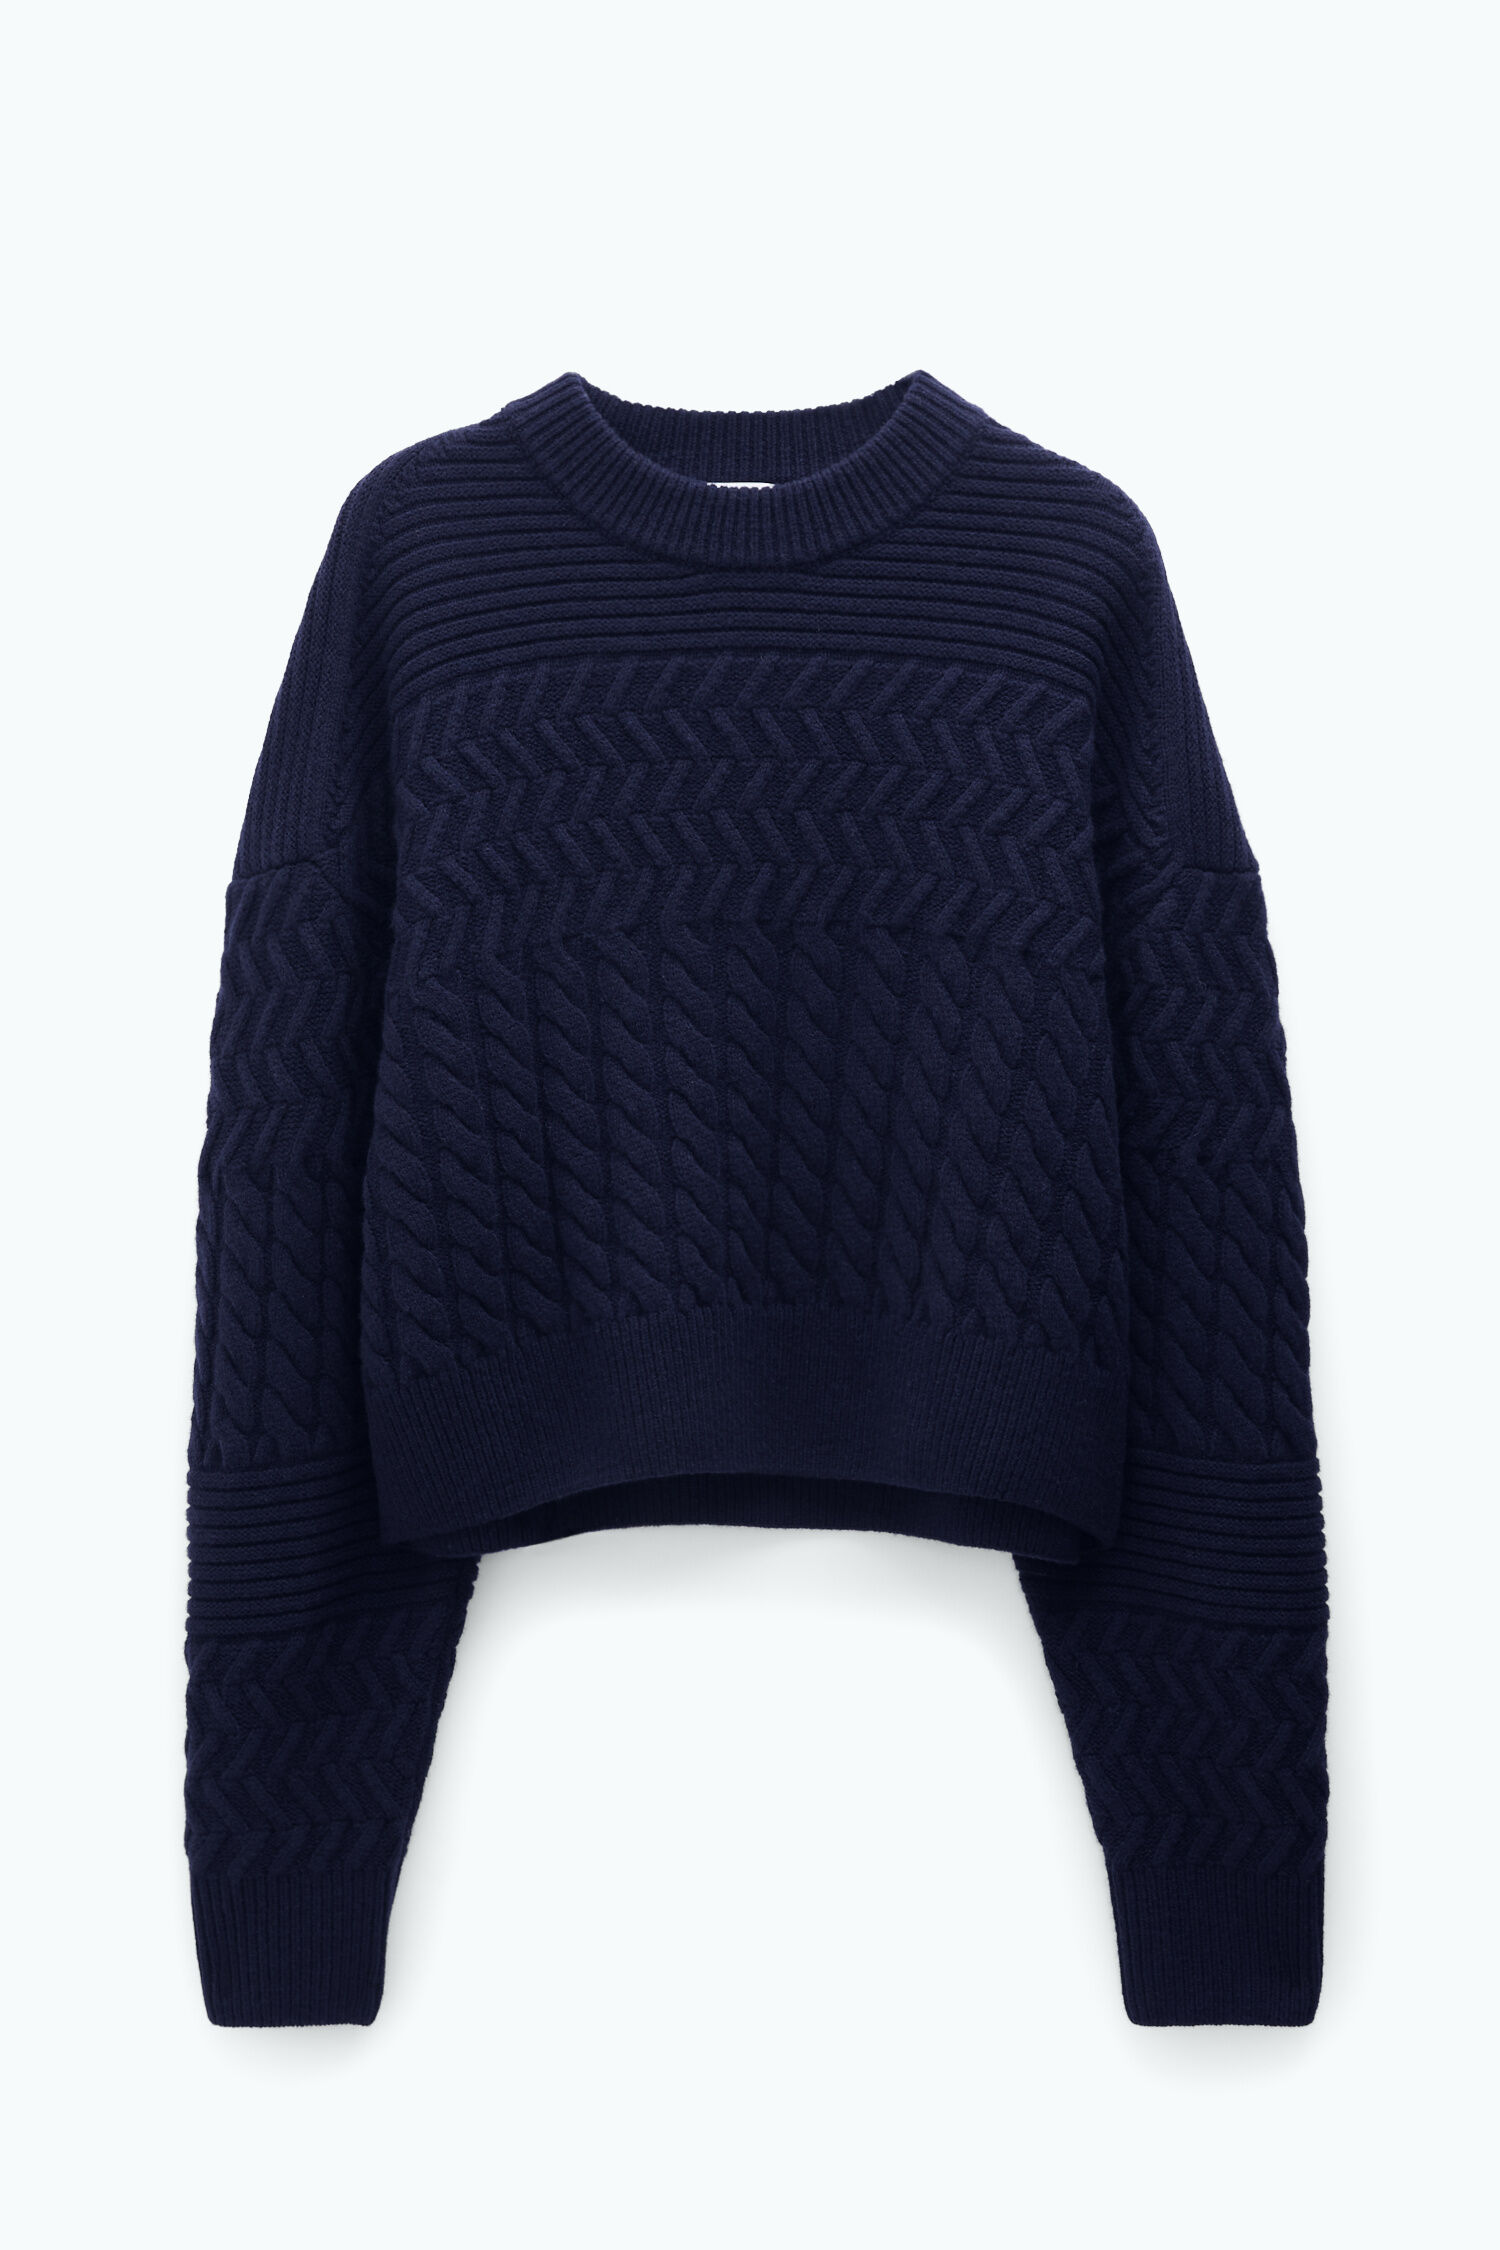 Boxy Braided Sweater